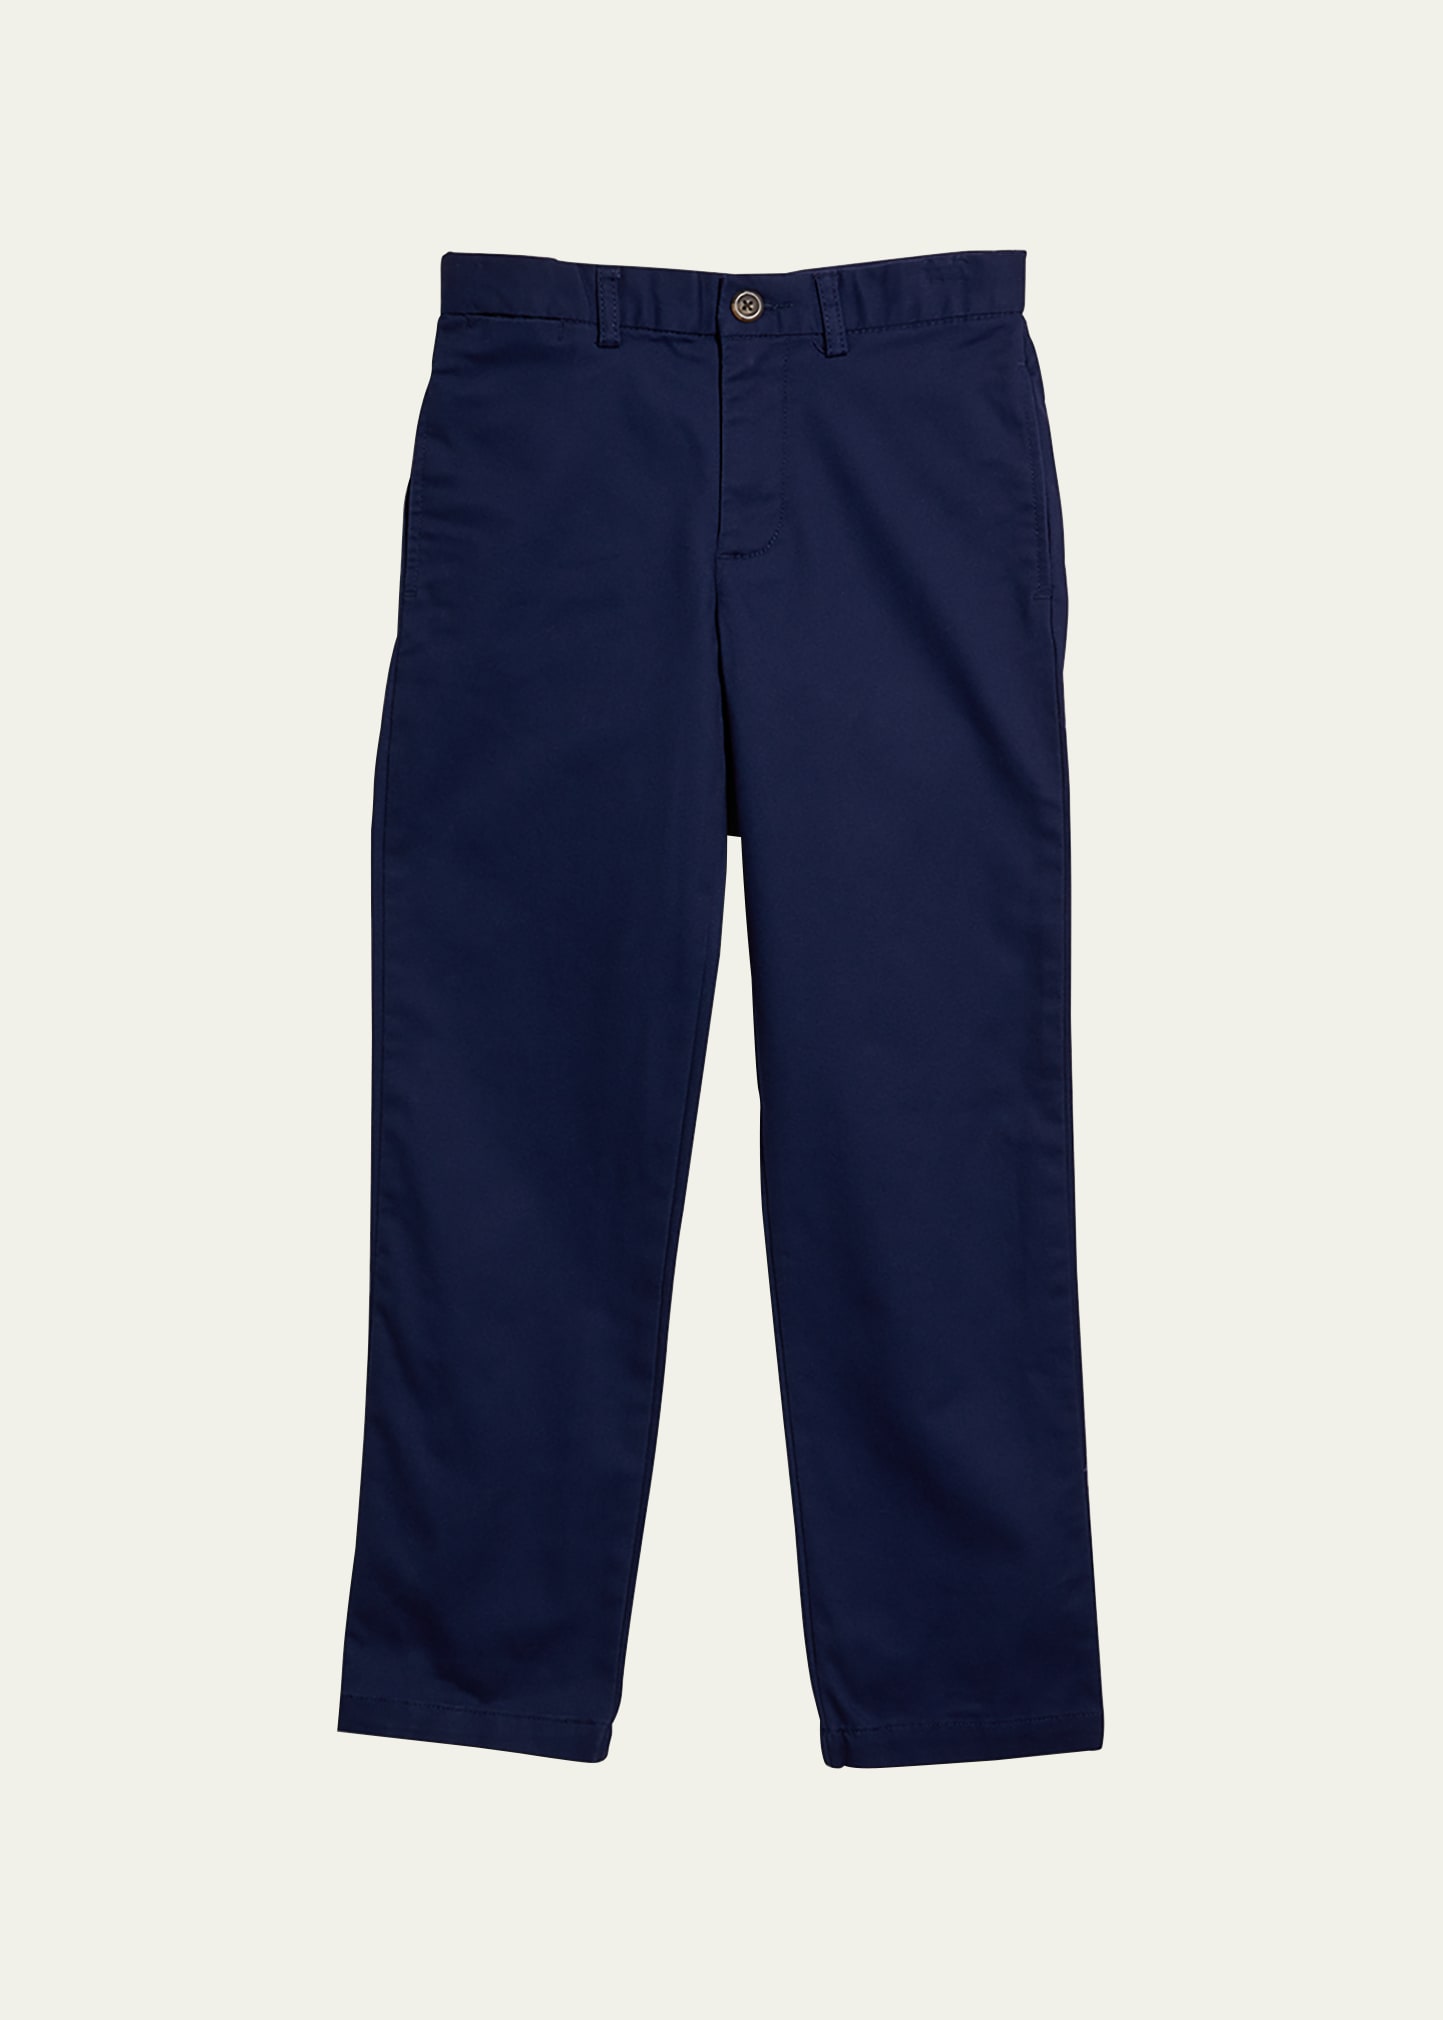 Ralph Lauren Kids' Boy's Flat Front Chino Pants In Navy